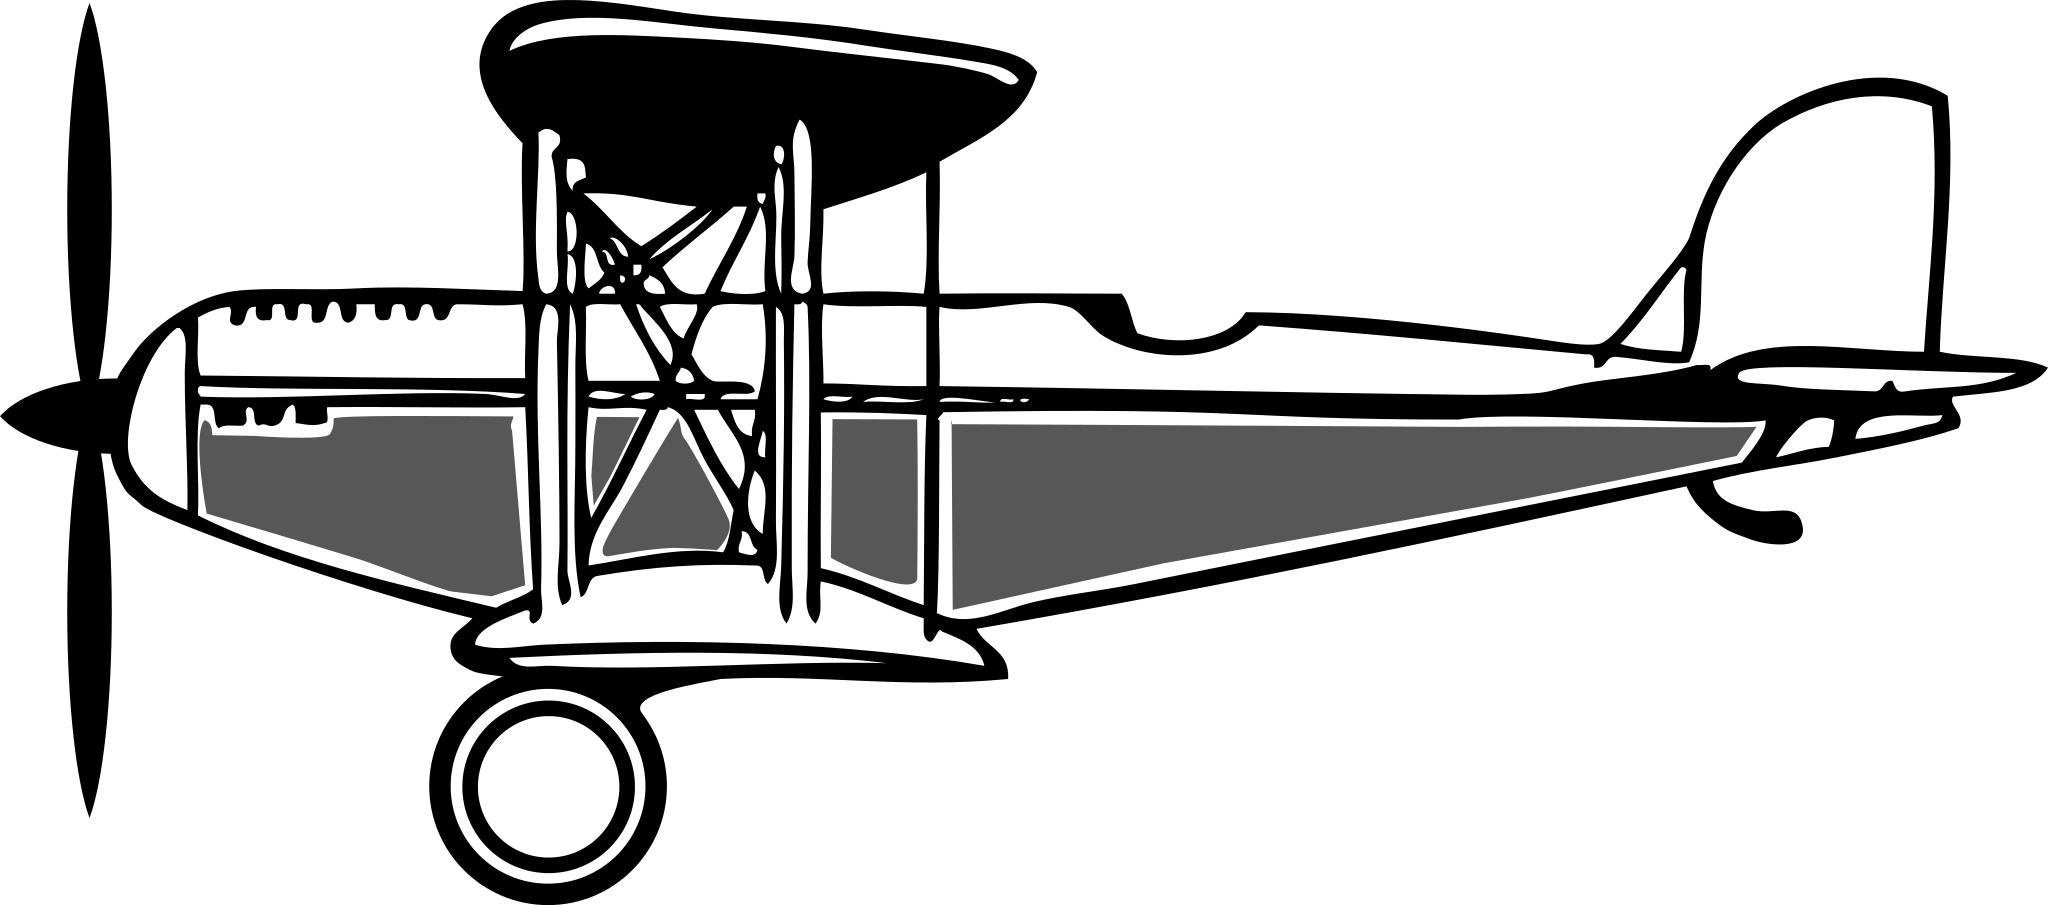 Самолет с пропеллером вектор